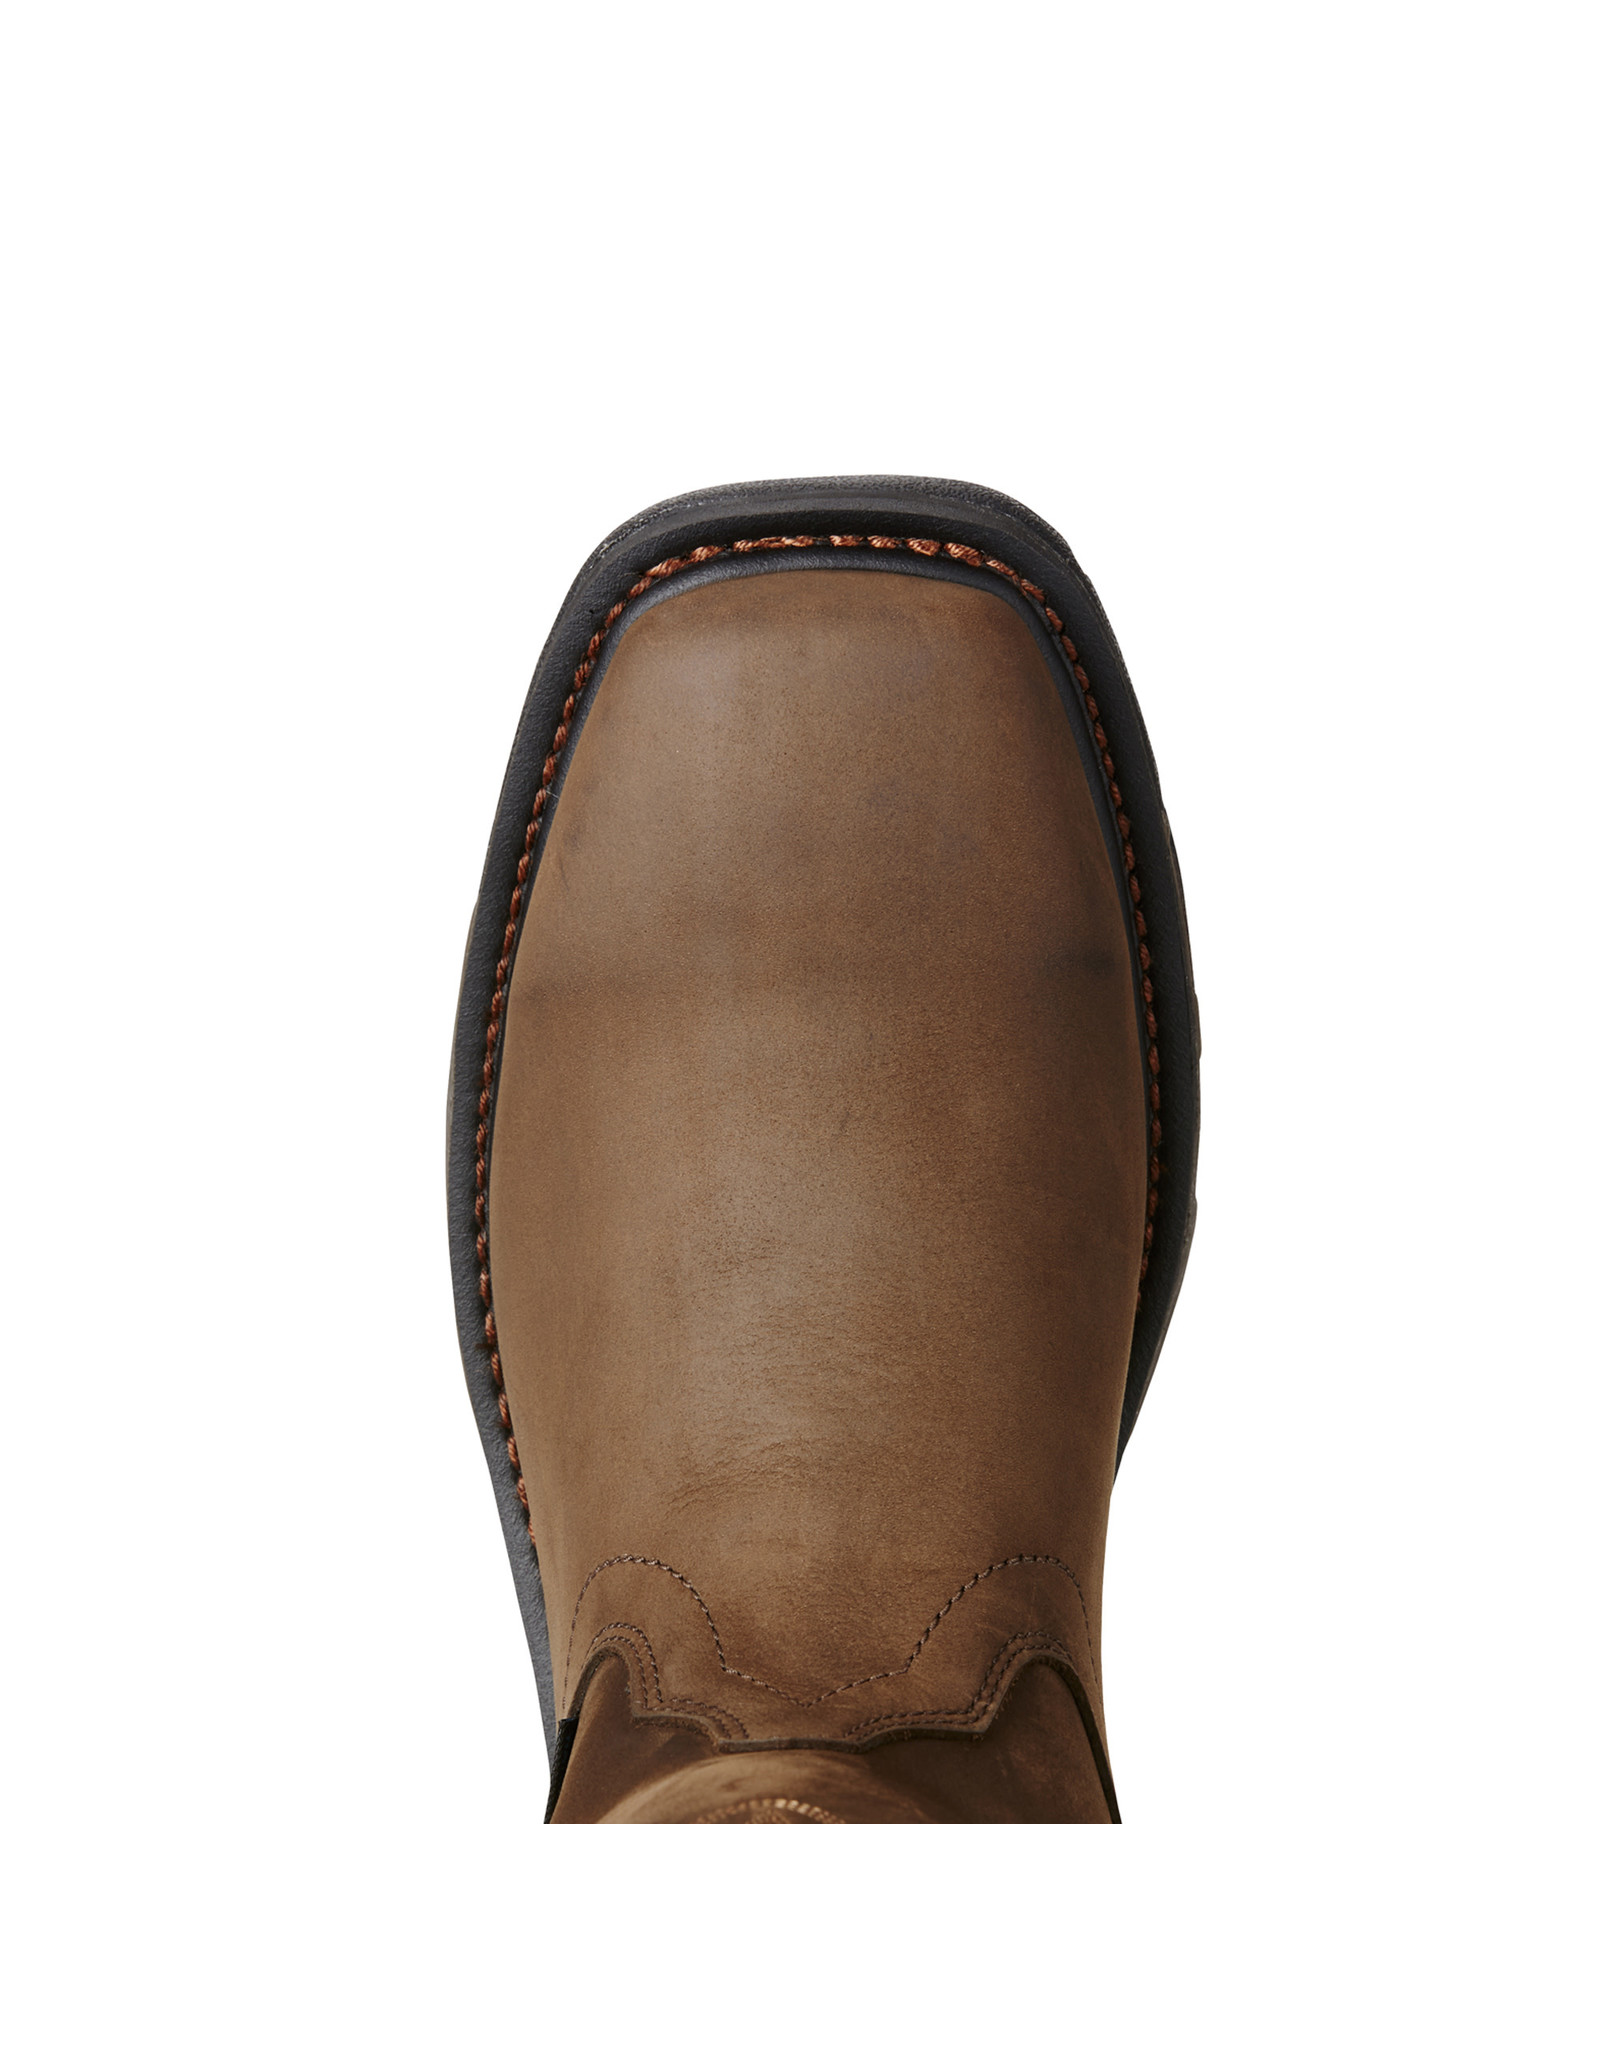 Ariat Men's Workhog Wellington Waterproof Soft Toe 10020093 Work Boots